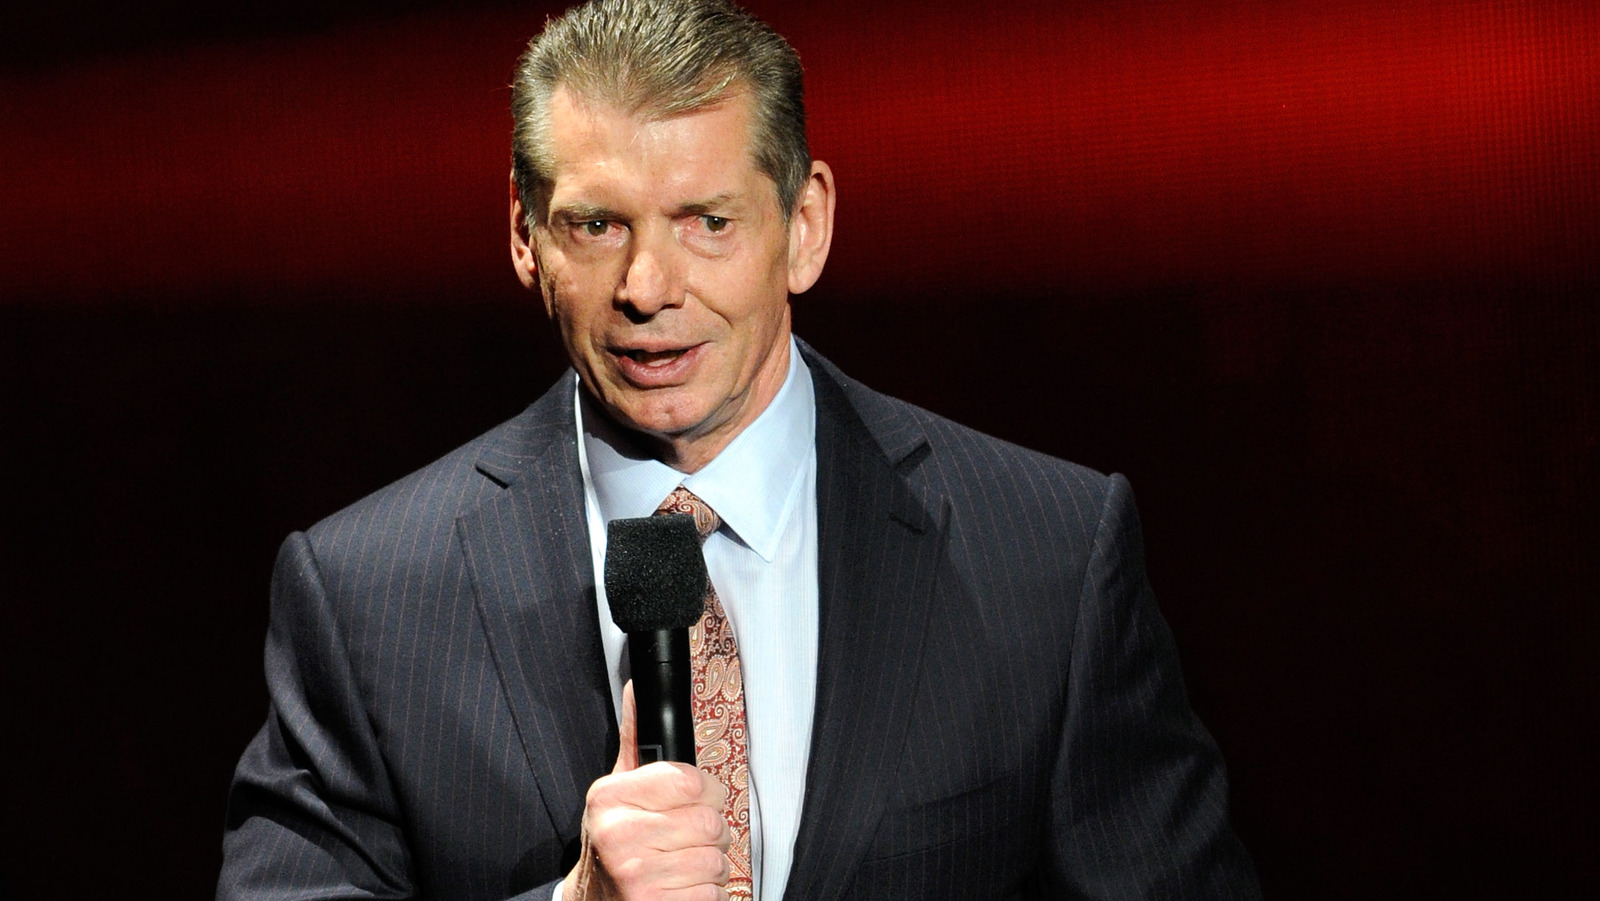 El presidente de TKO, Mark Shapiro, se dirige a la liquidación de acciones de Vince McMahon y al futuro de la WWE